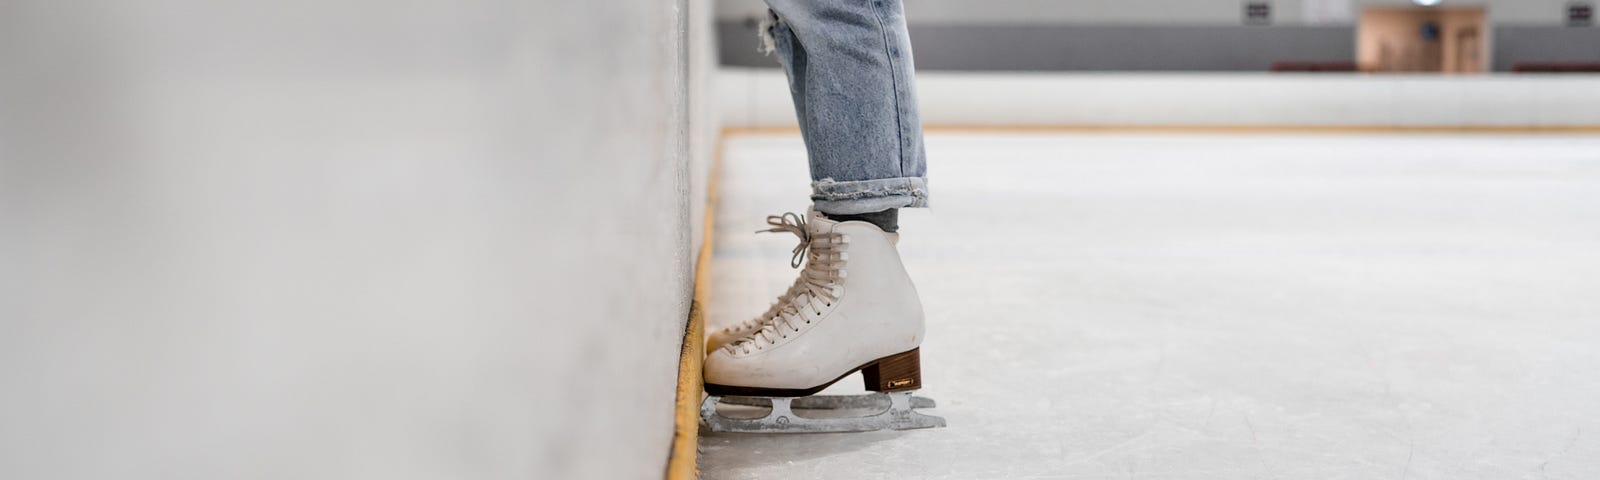 adult figure skating